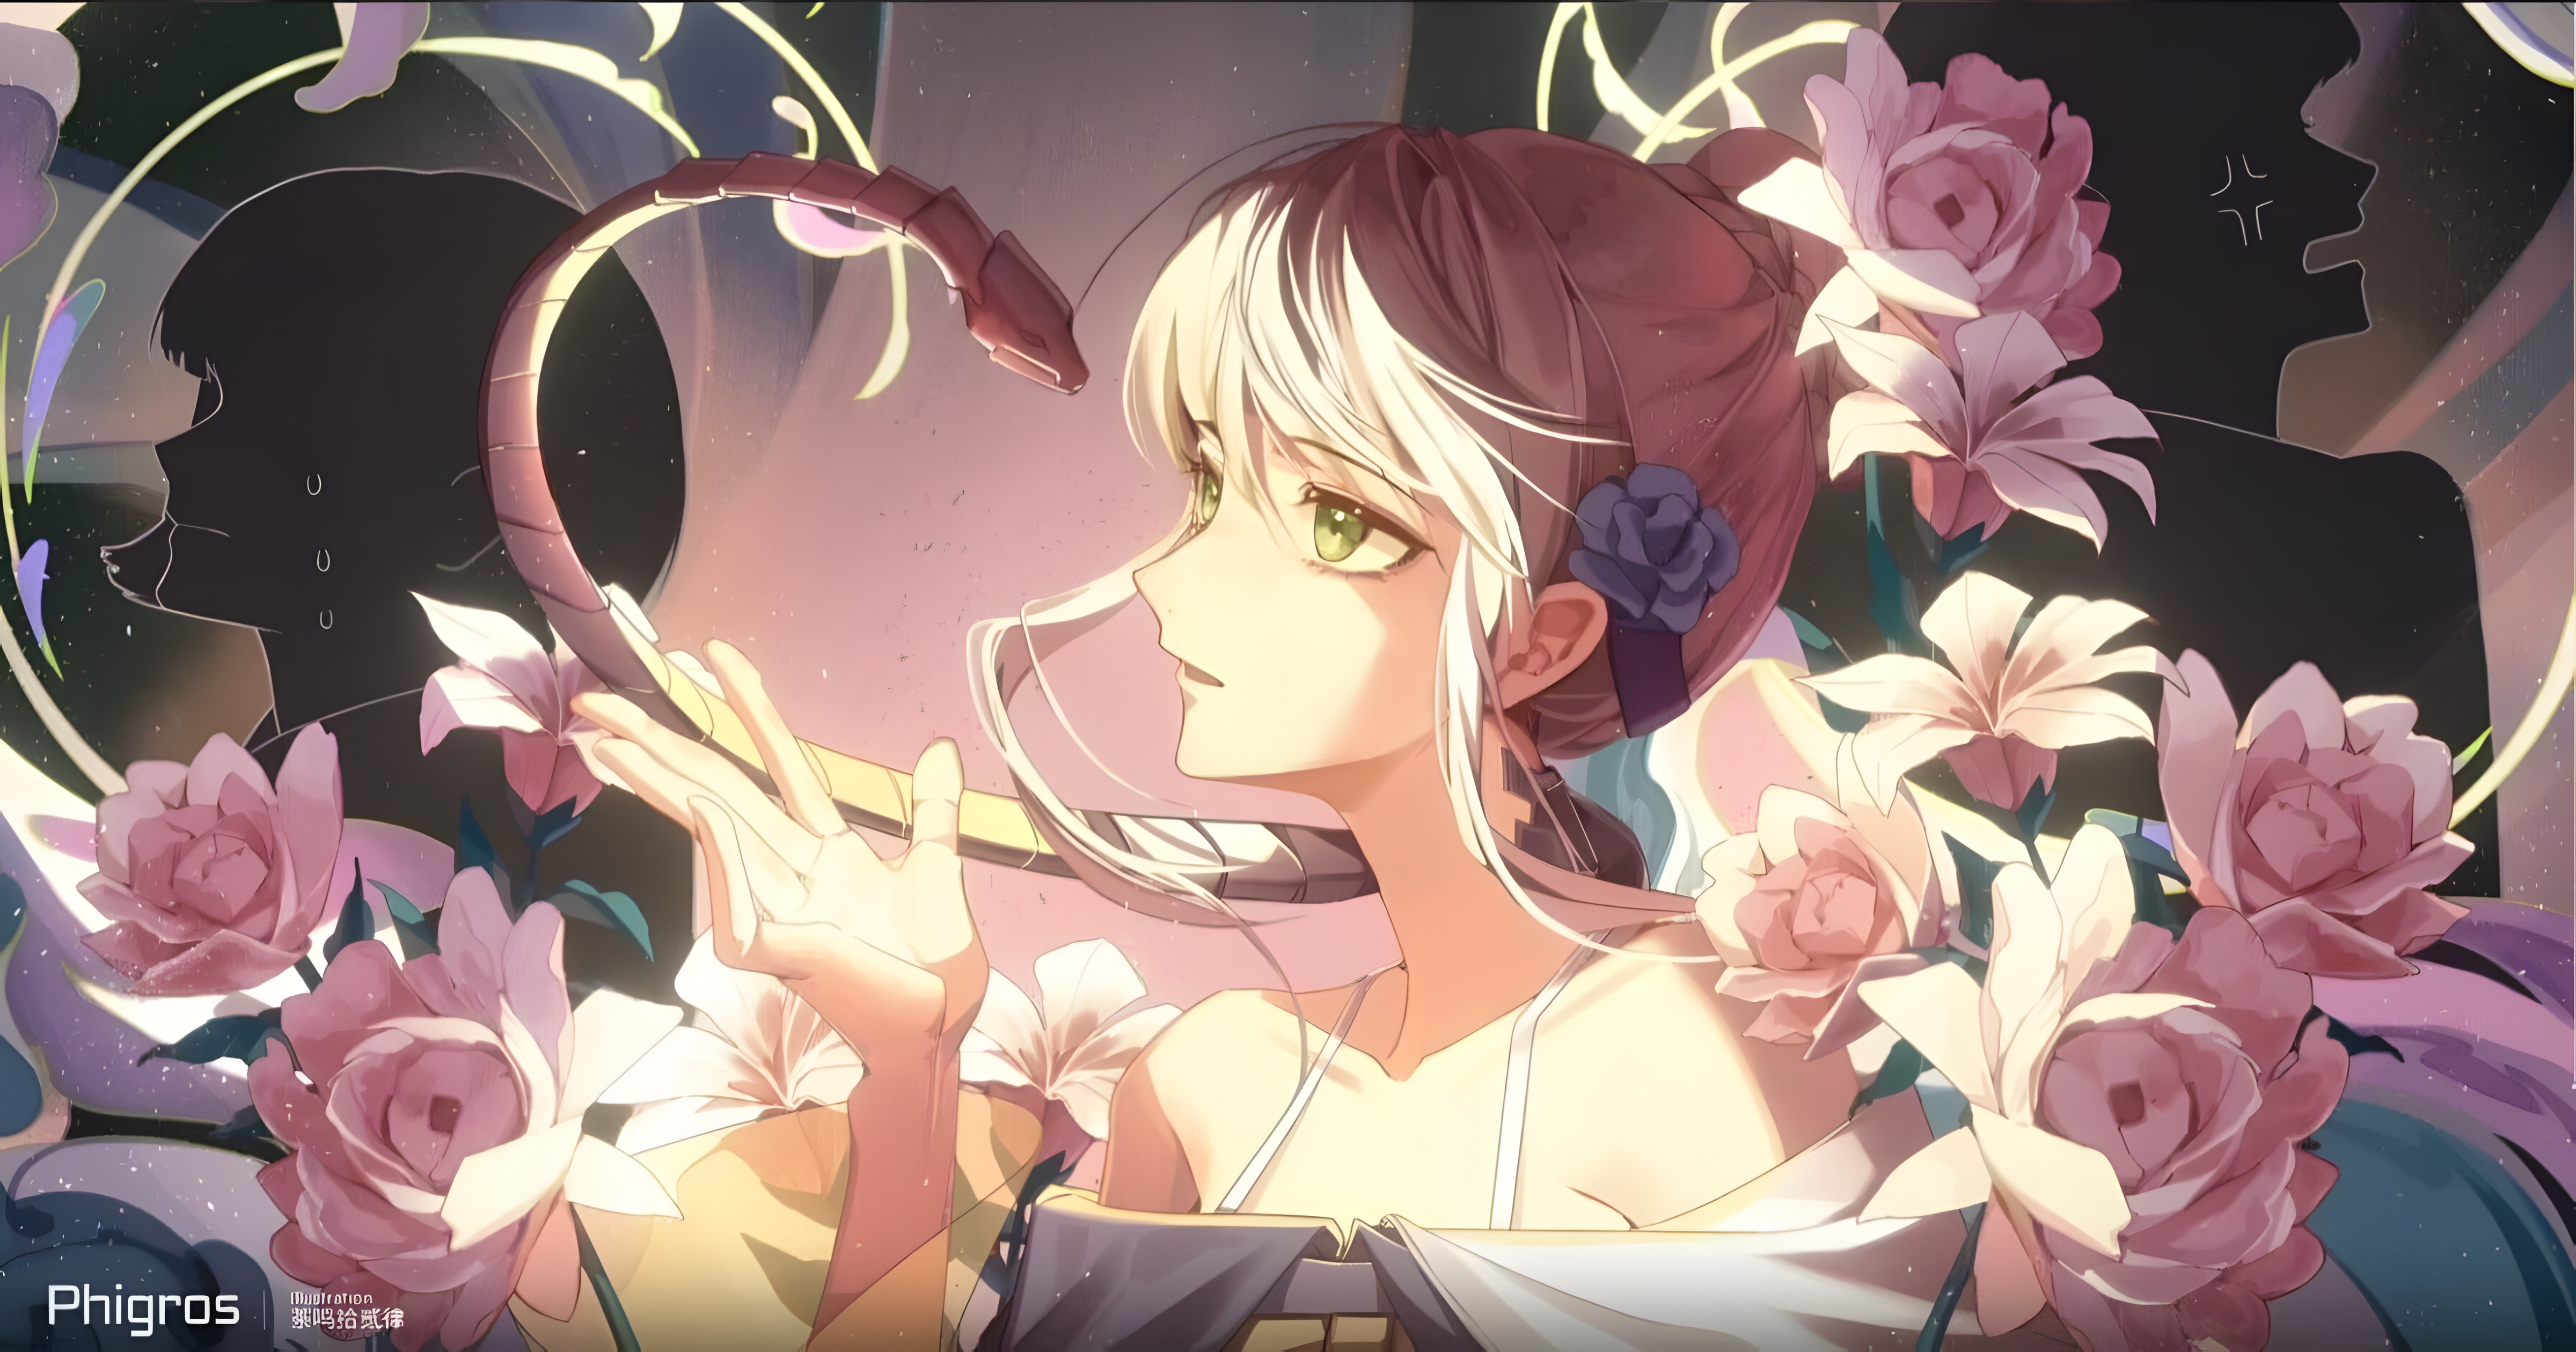 2D Illustration Anime Girls Flowers Snake Silhouette Flower In Hair 4800x2520